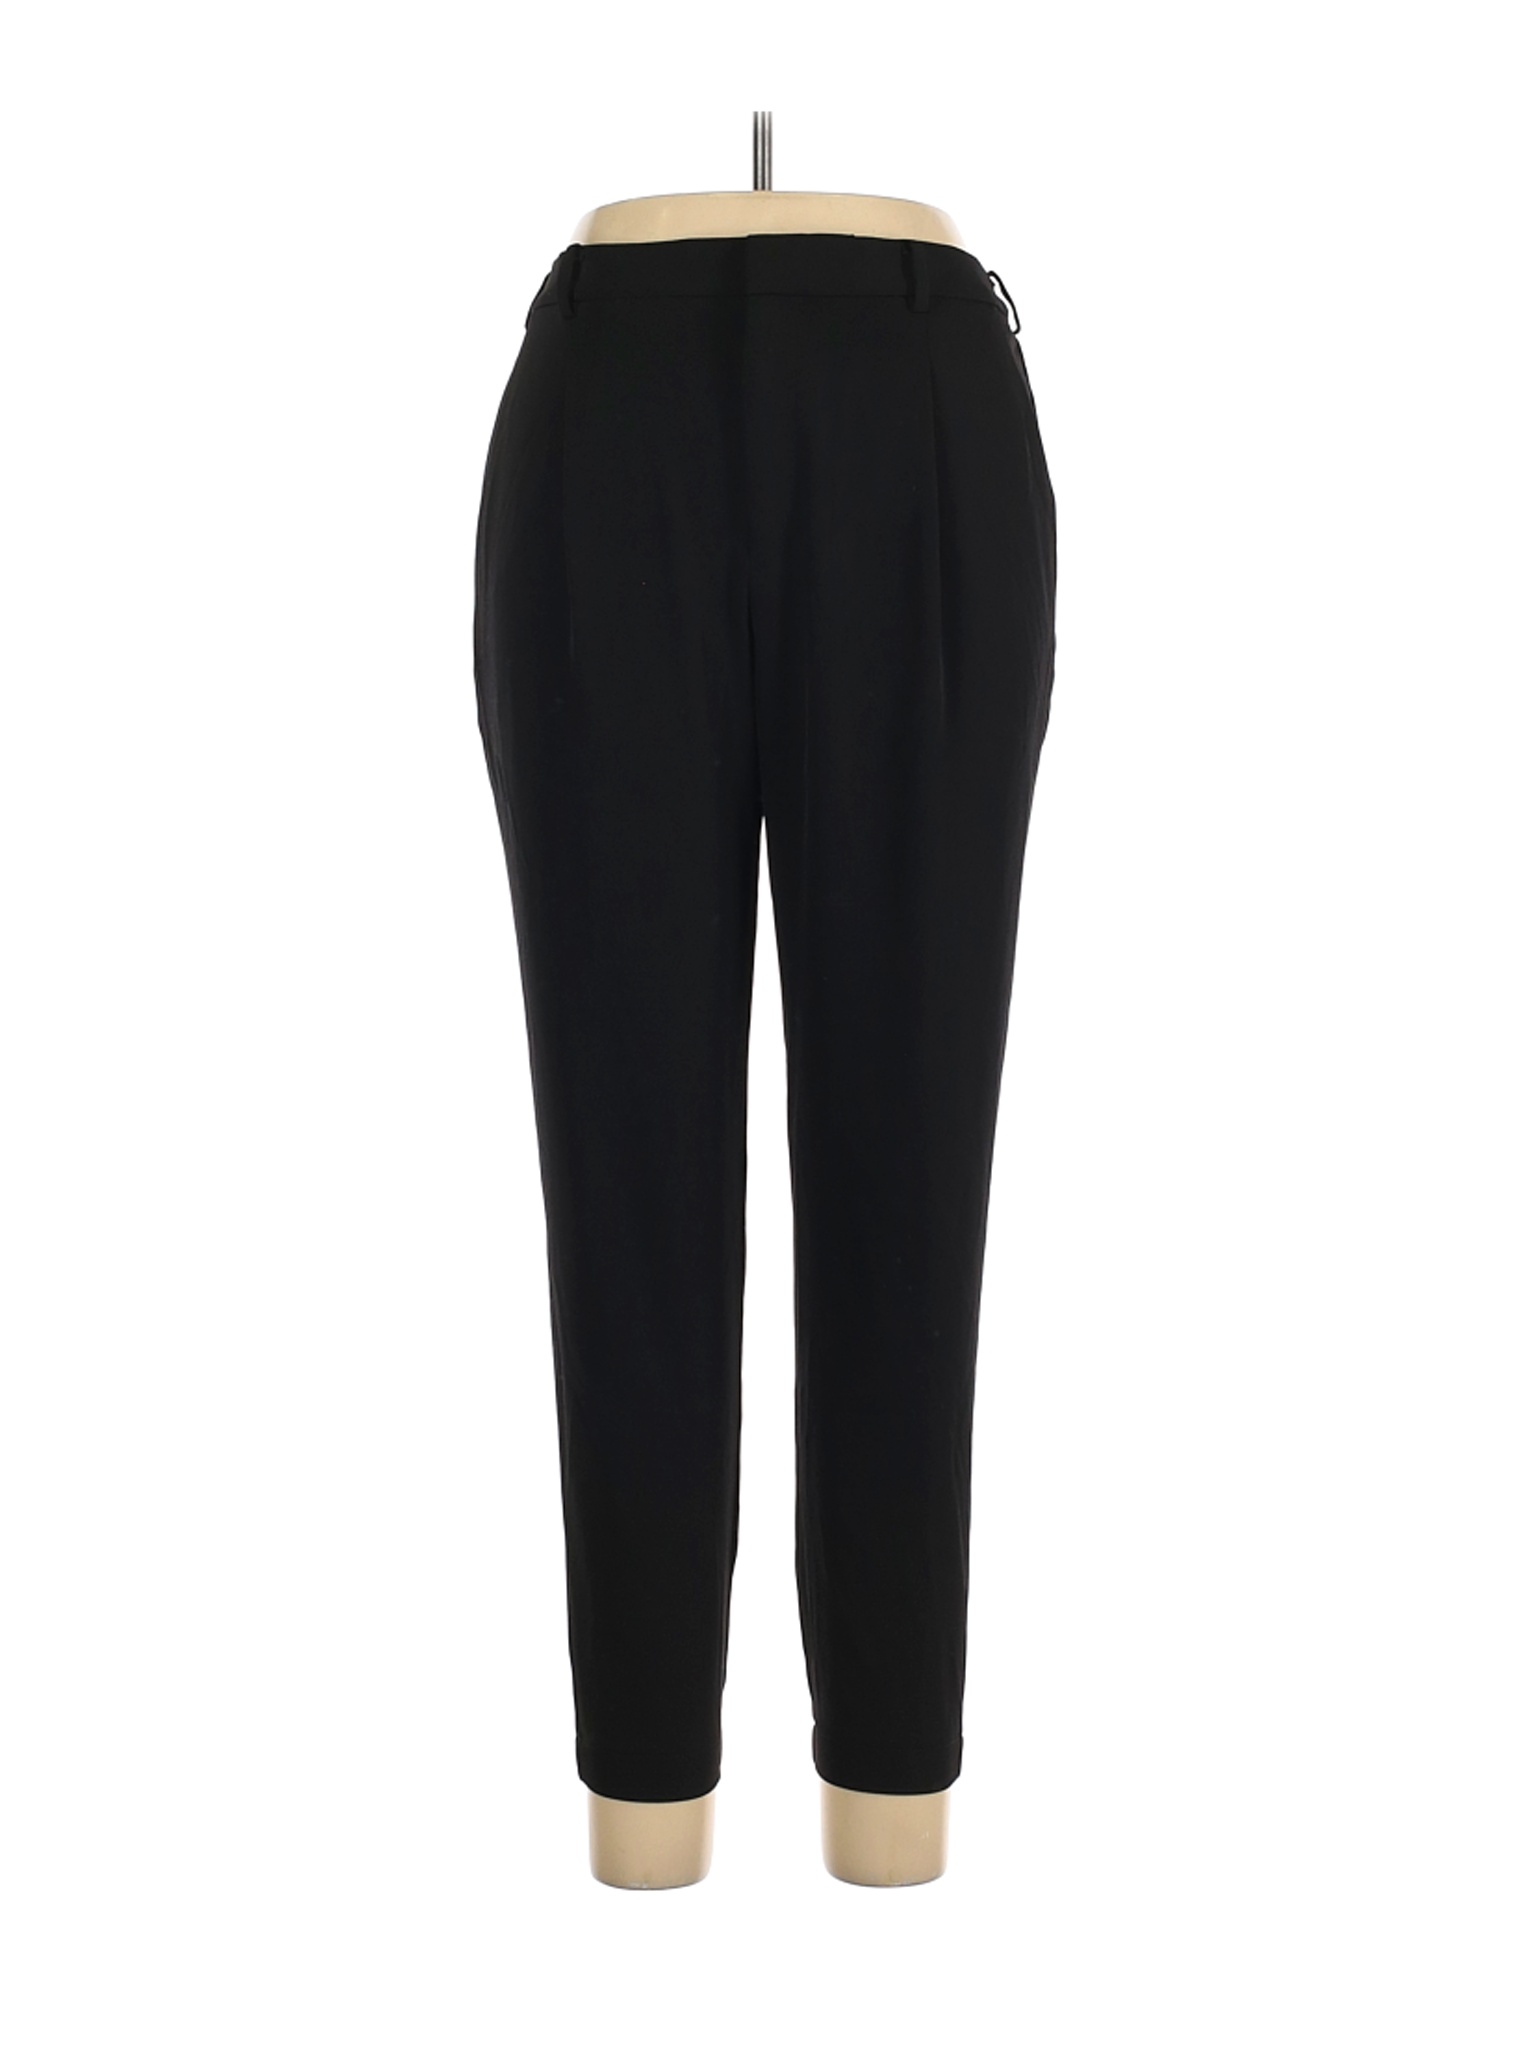 Uniqlo Women Black Dress Pants 30W | eBay